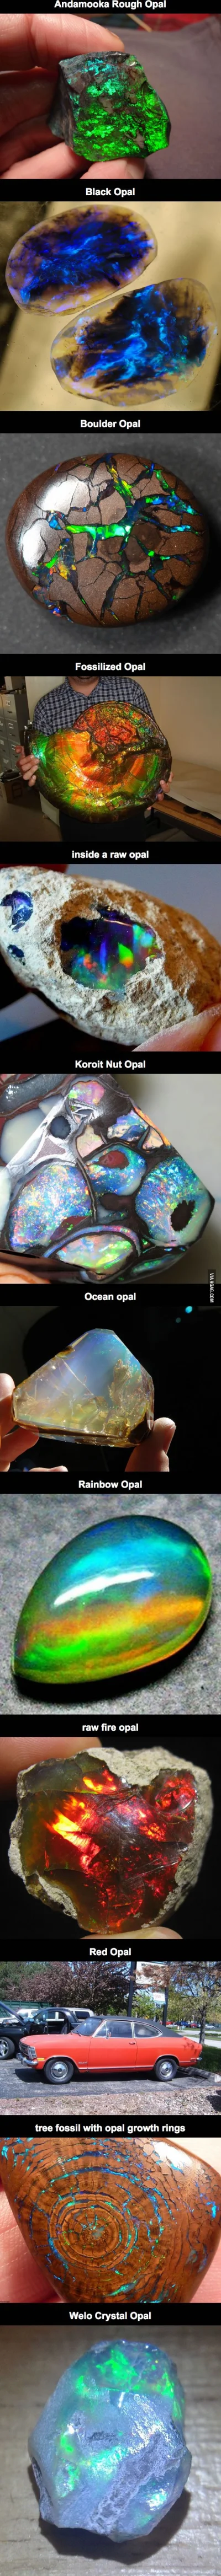 Pan_Slawek - Grafika przedstawiające różnego rodzaju opale

SiO2·nH2O 

#geologia...